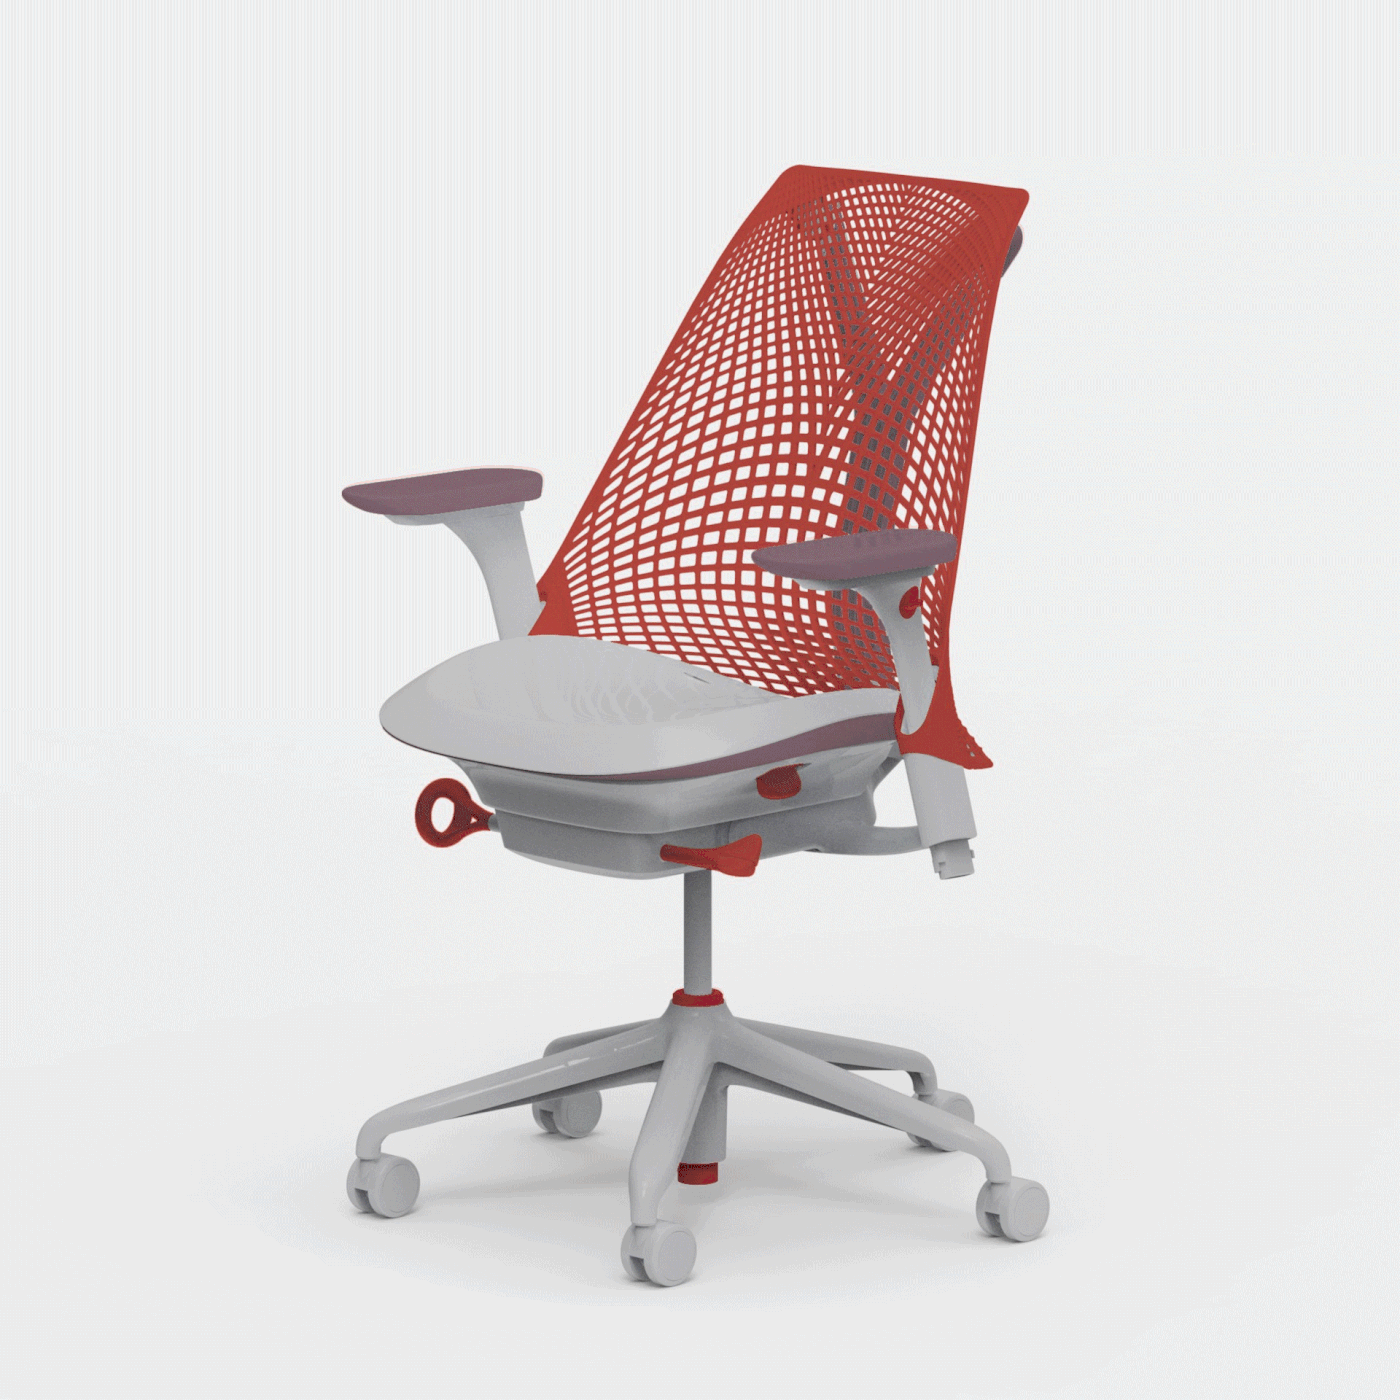 应用程序，ai，椅子，cmf设计，设计工具，产品设计，Sayl 椅子，